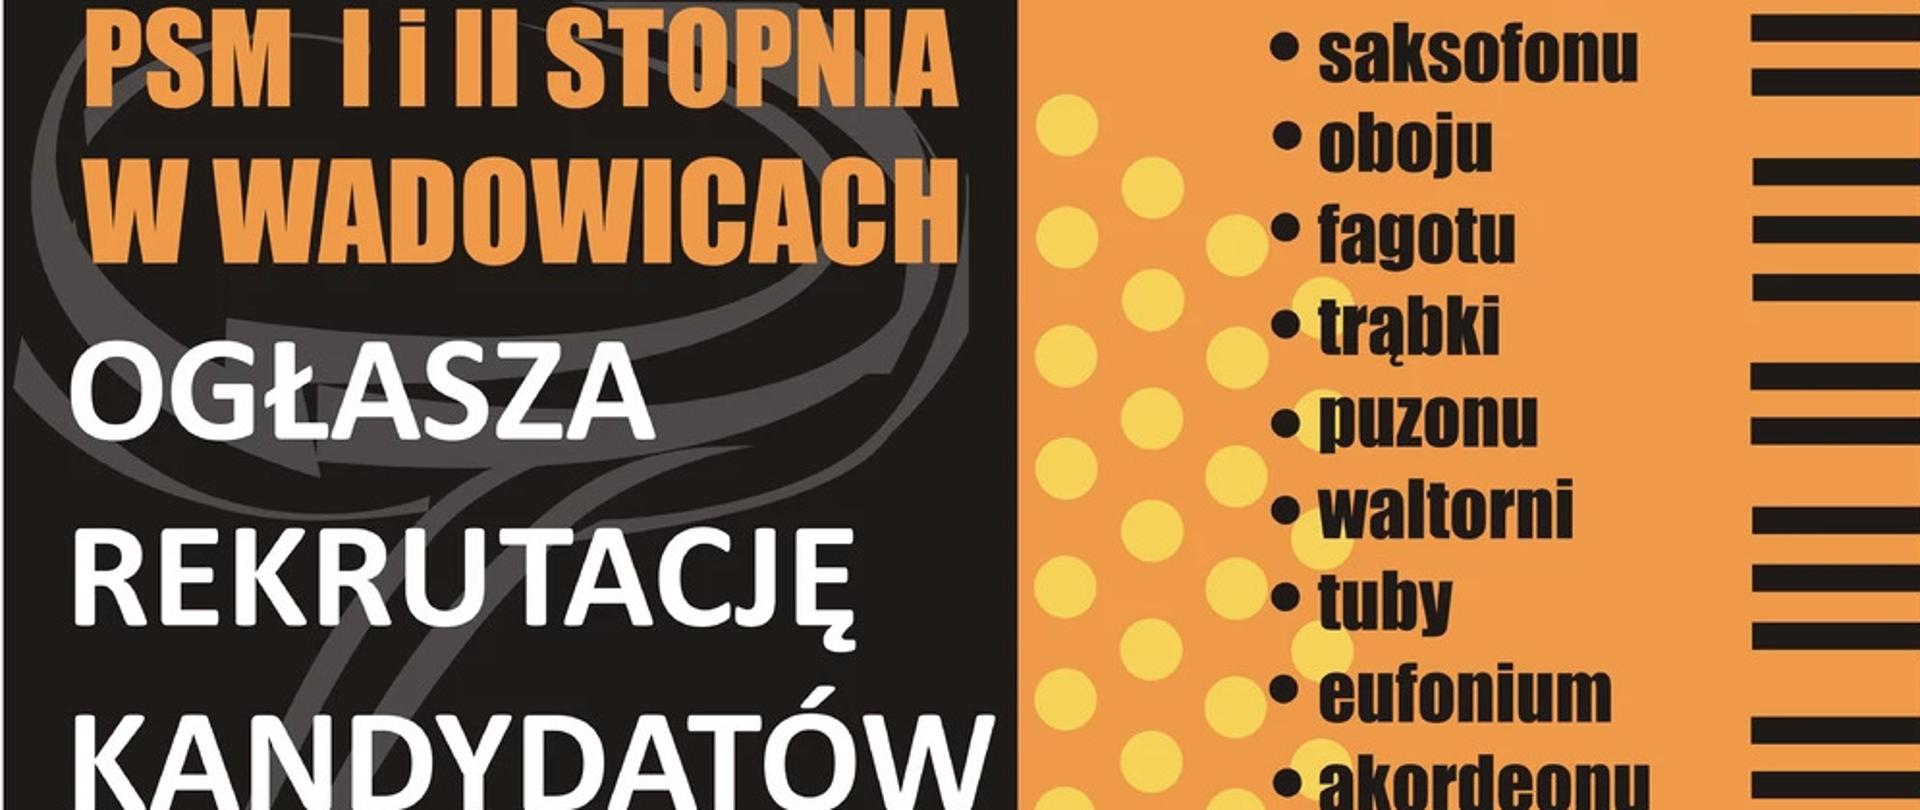 Plakat rekrutacji do PSM I i II stopnia w Wadowicach. Tło czarno-pomarańczowe. Logo szkoły. Wymienione instrumenty na które można zapisać dziecko.